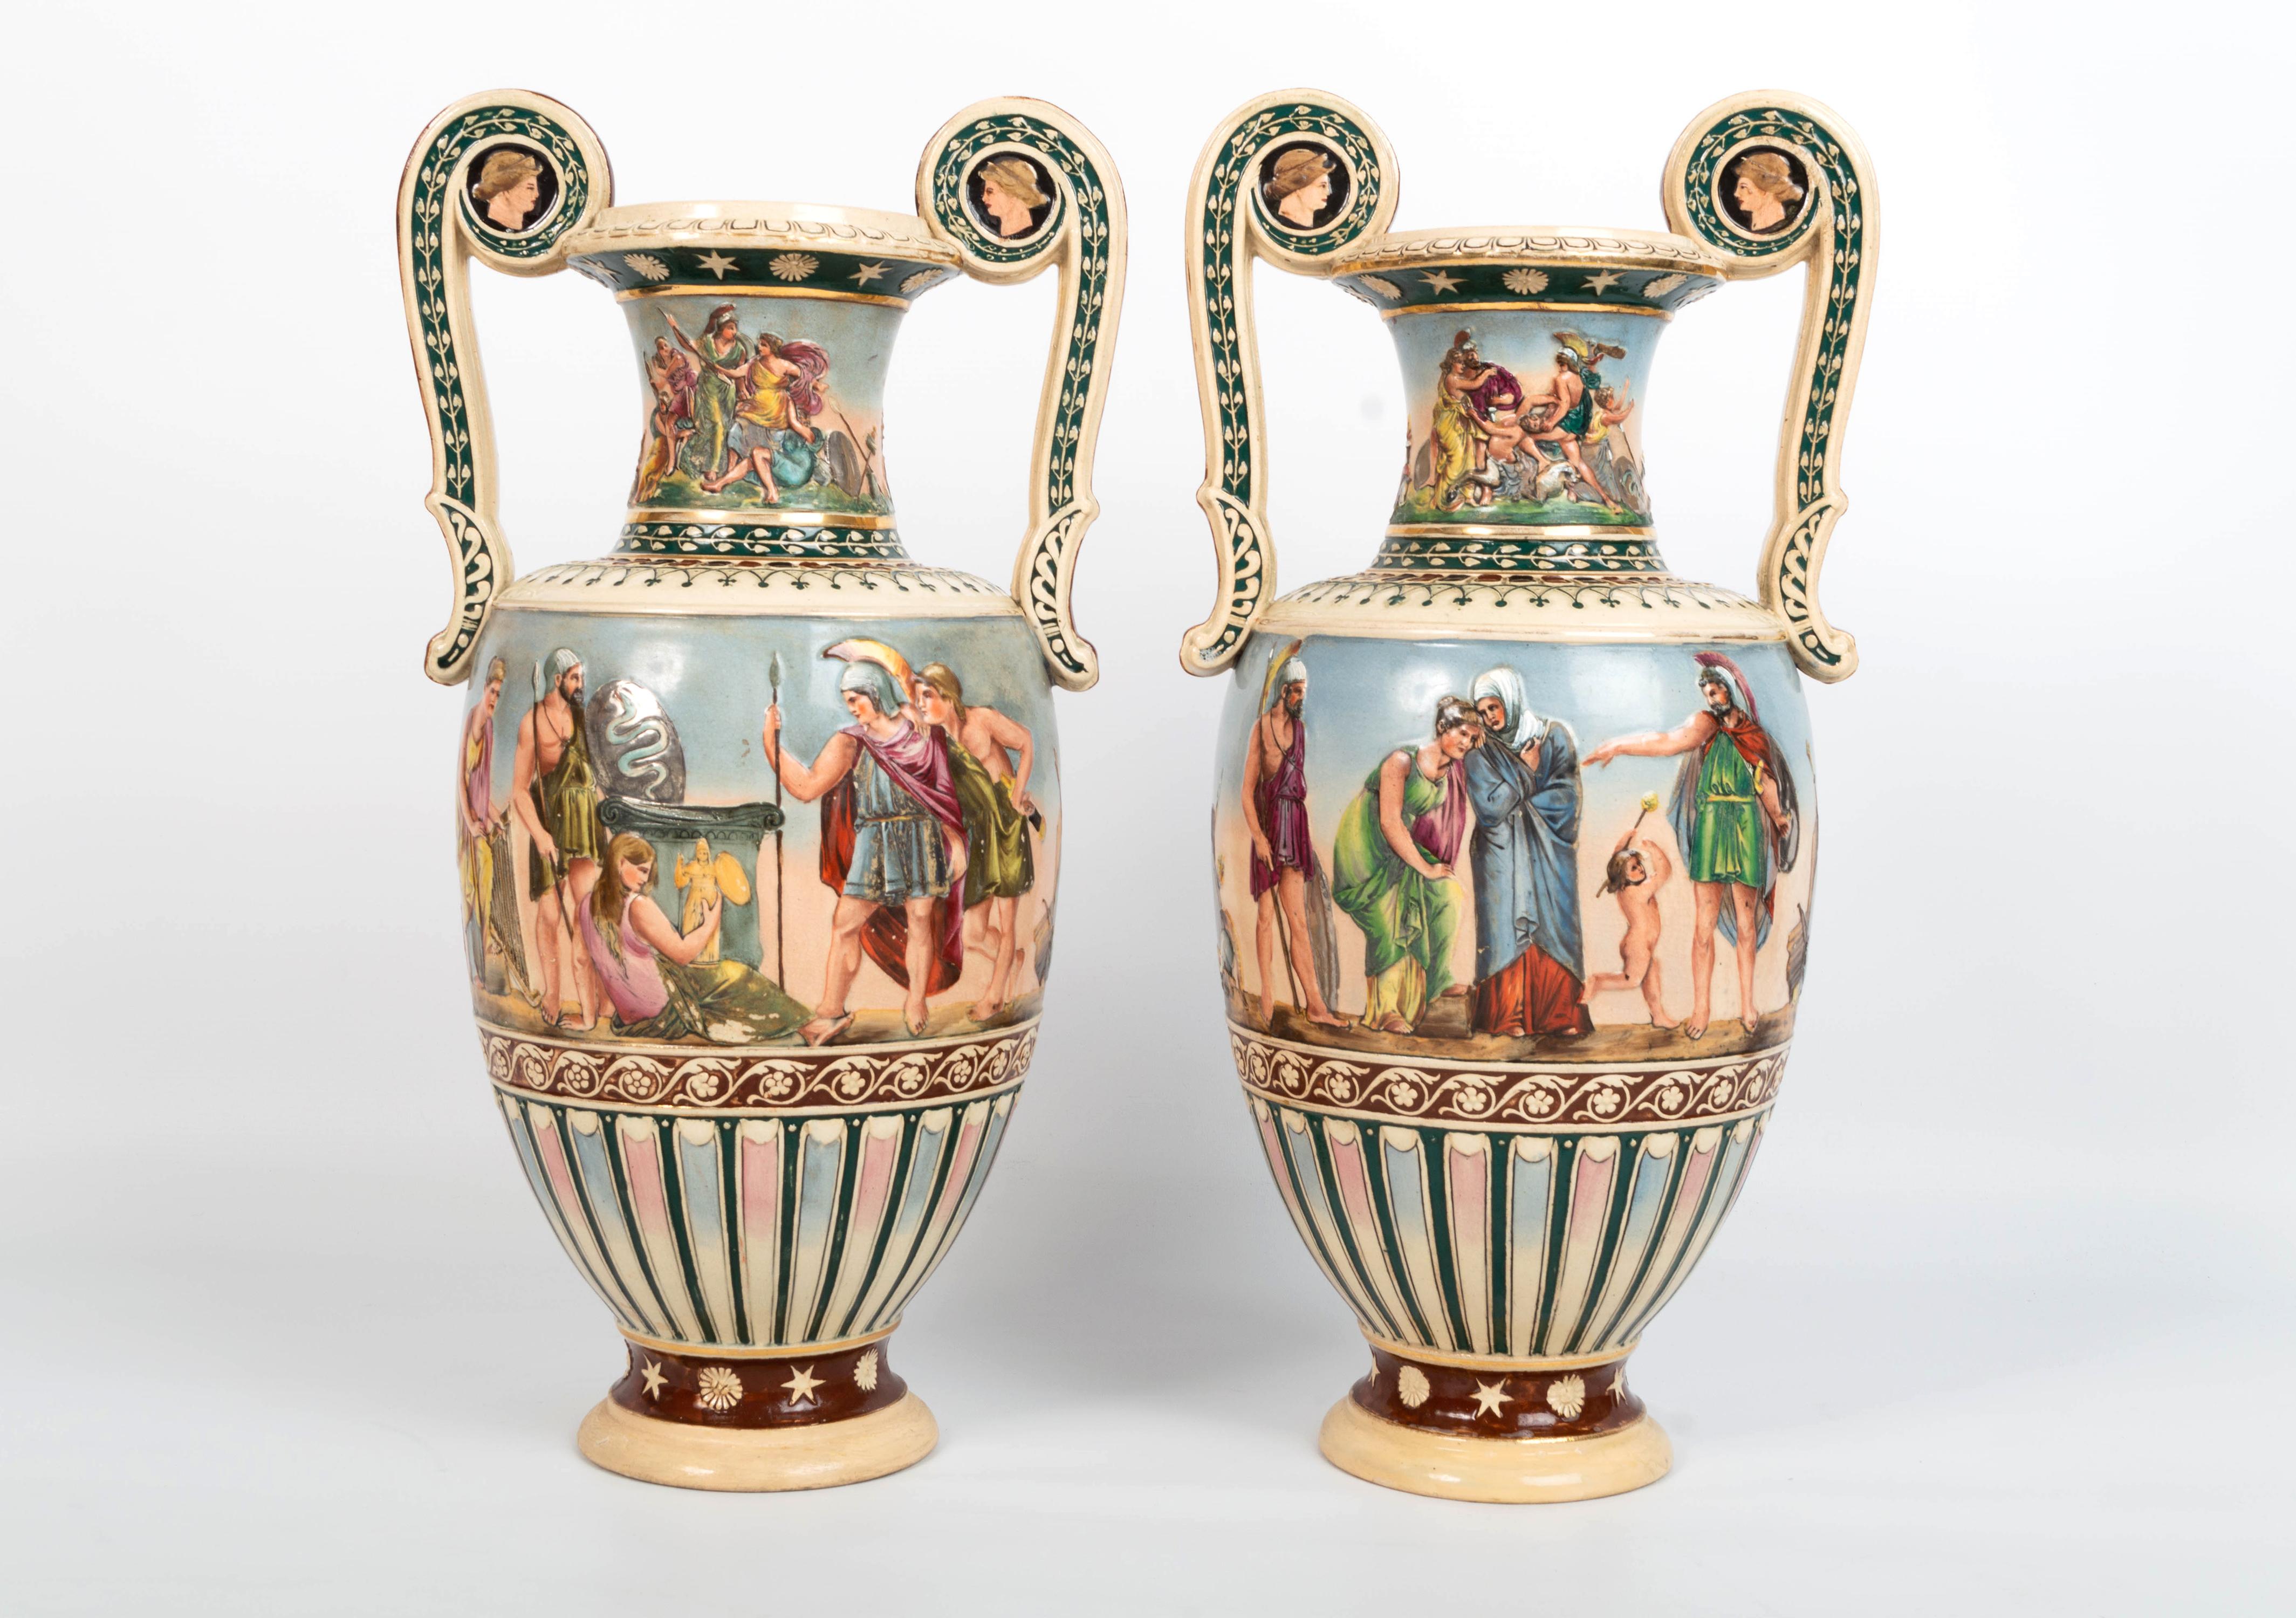 Paire de vases anglais de style néo-grec du XIXe siècle
Angleterre, C.1830
Poterie du Staffordshire

Une paire de vases en poterie décorés dans un style grec avec des personnages en relief. 
Chaque vase présente un contour en balustre avec deux